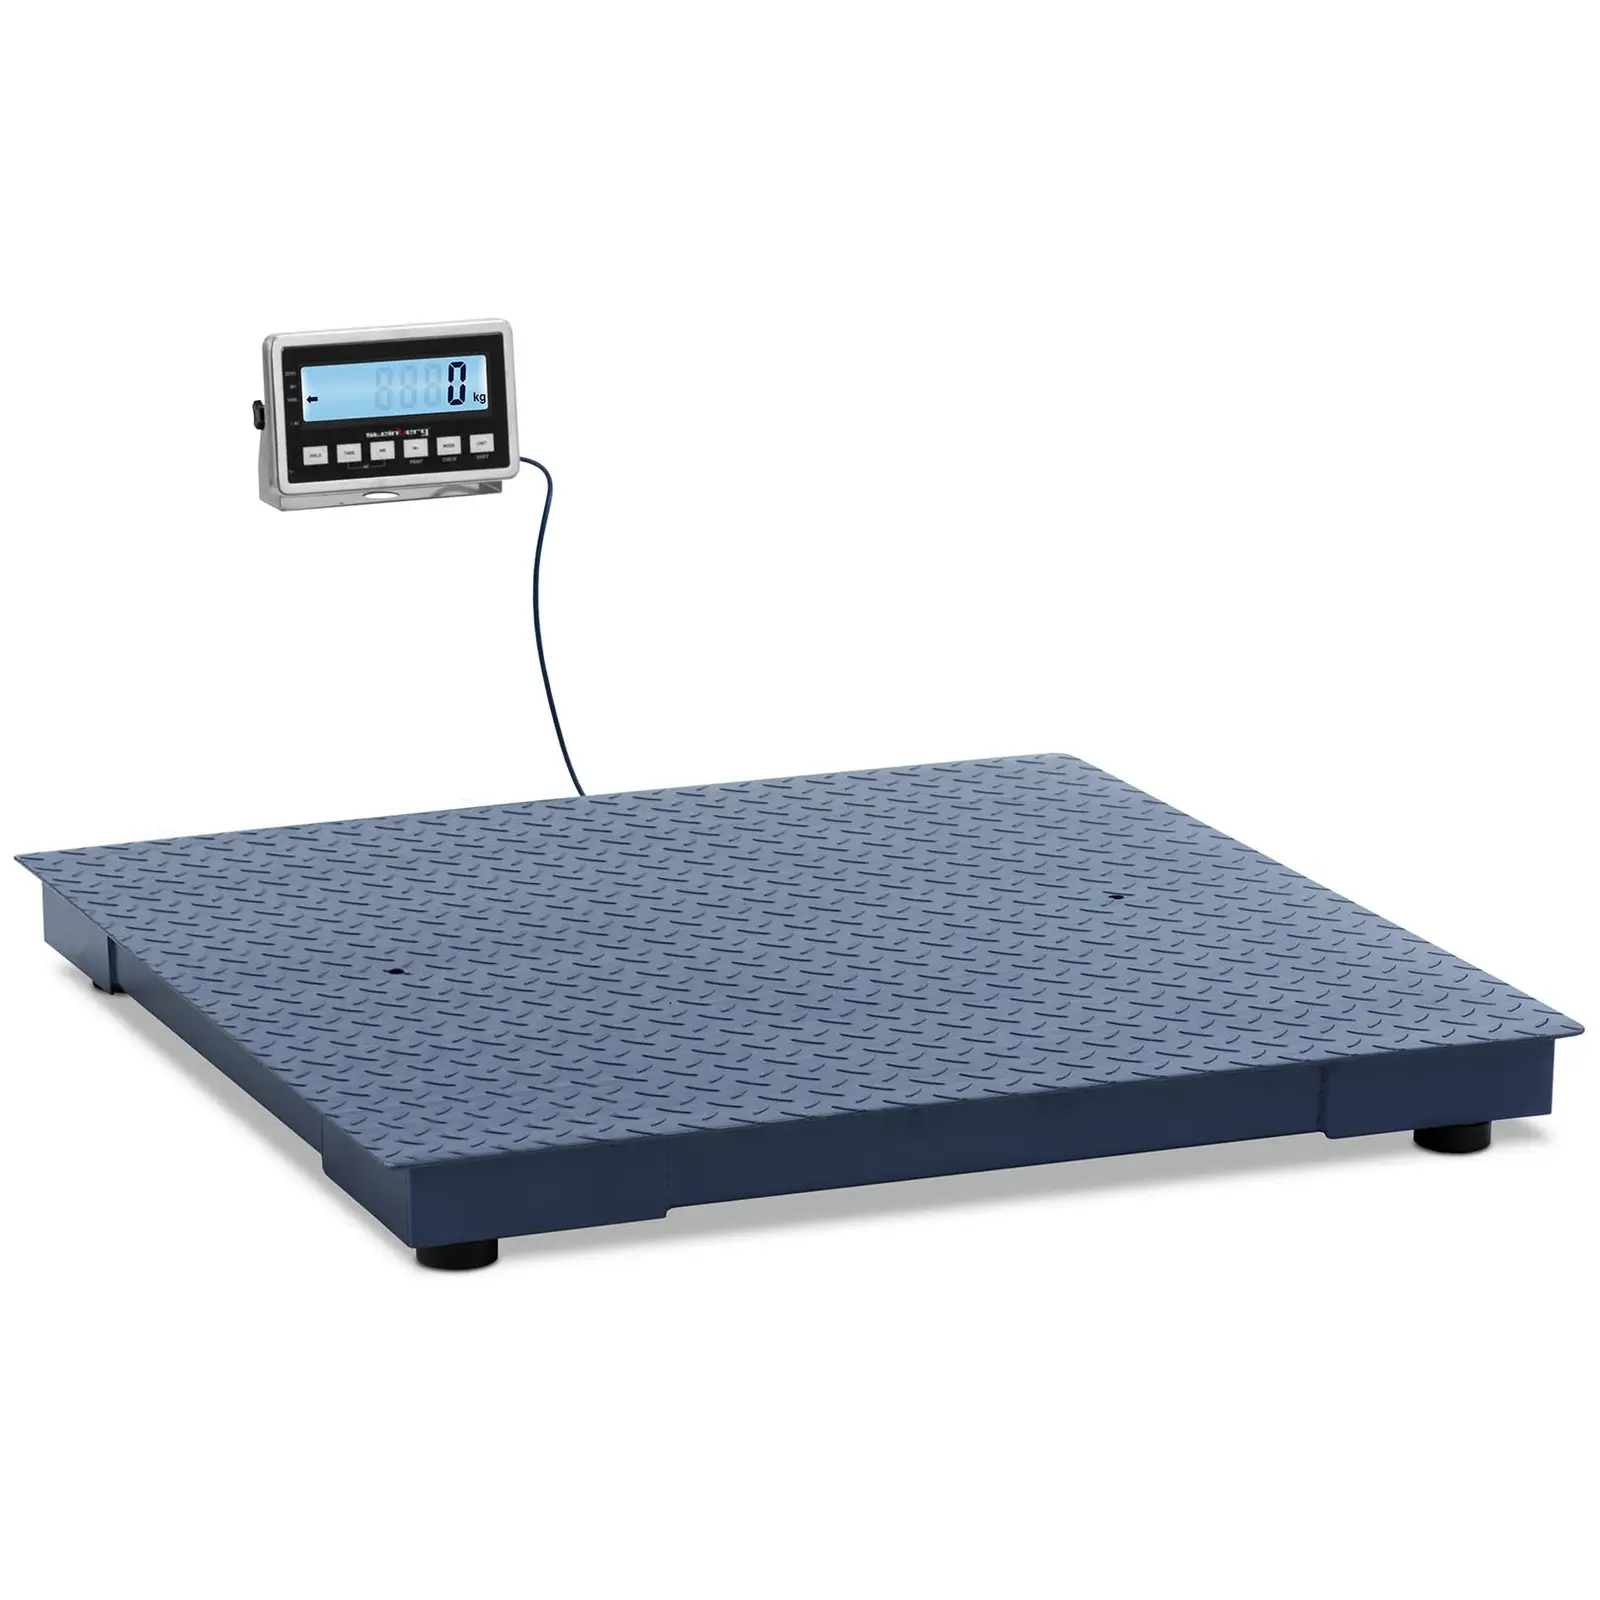 Balance au sol - 3000 kg / 1 kg - 1000 x 1000 mm - LCD